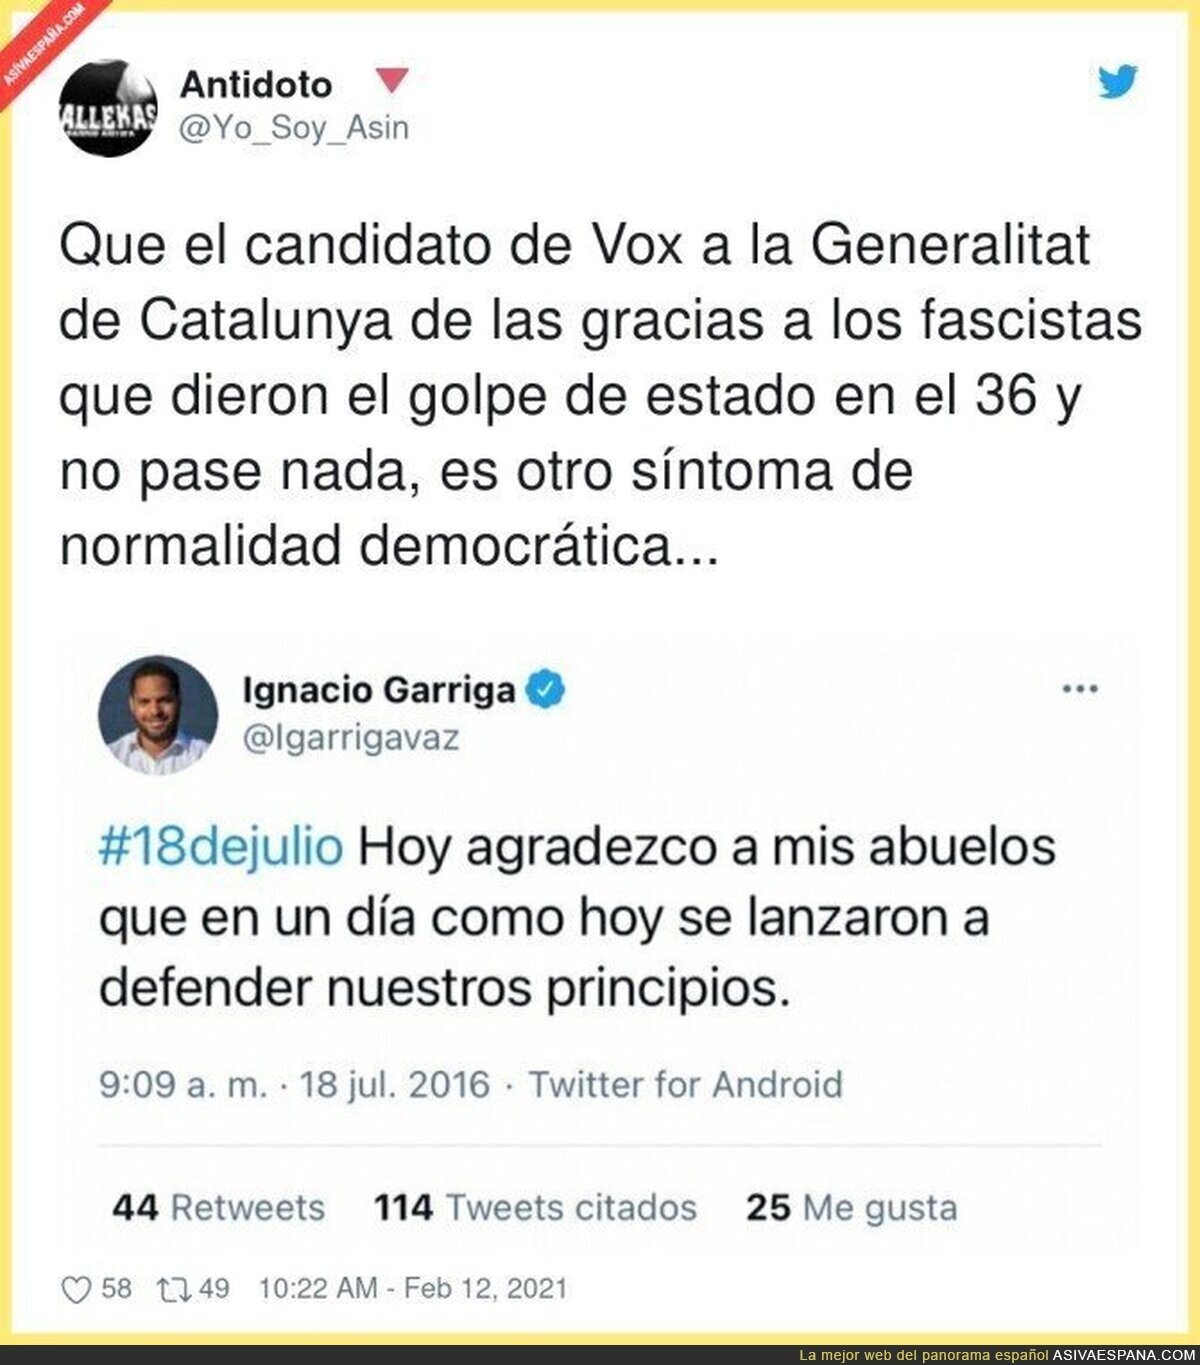 Es muy grave lo de Ignacio Garriga